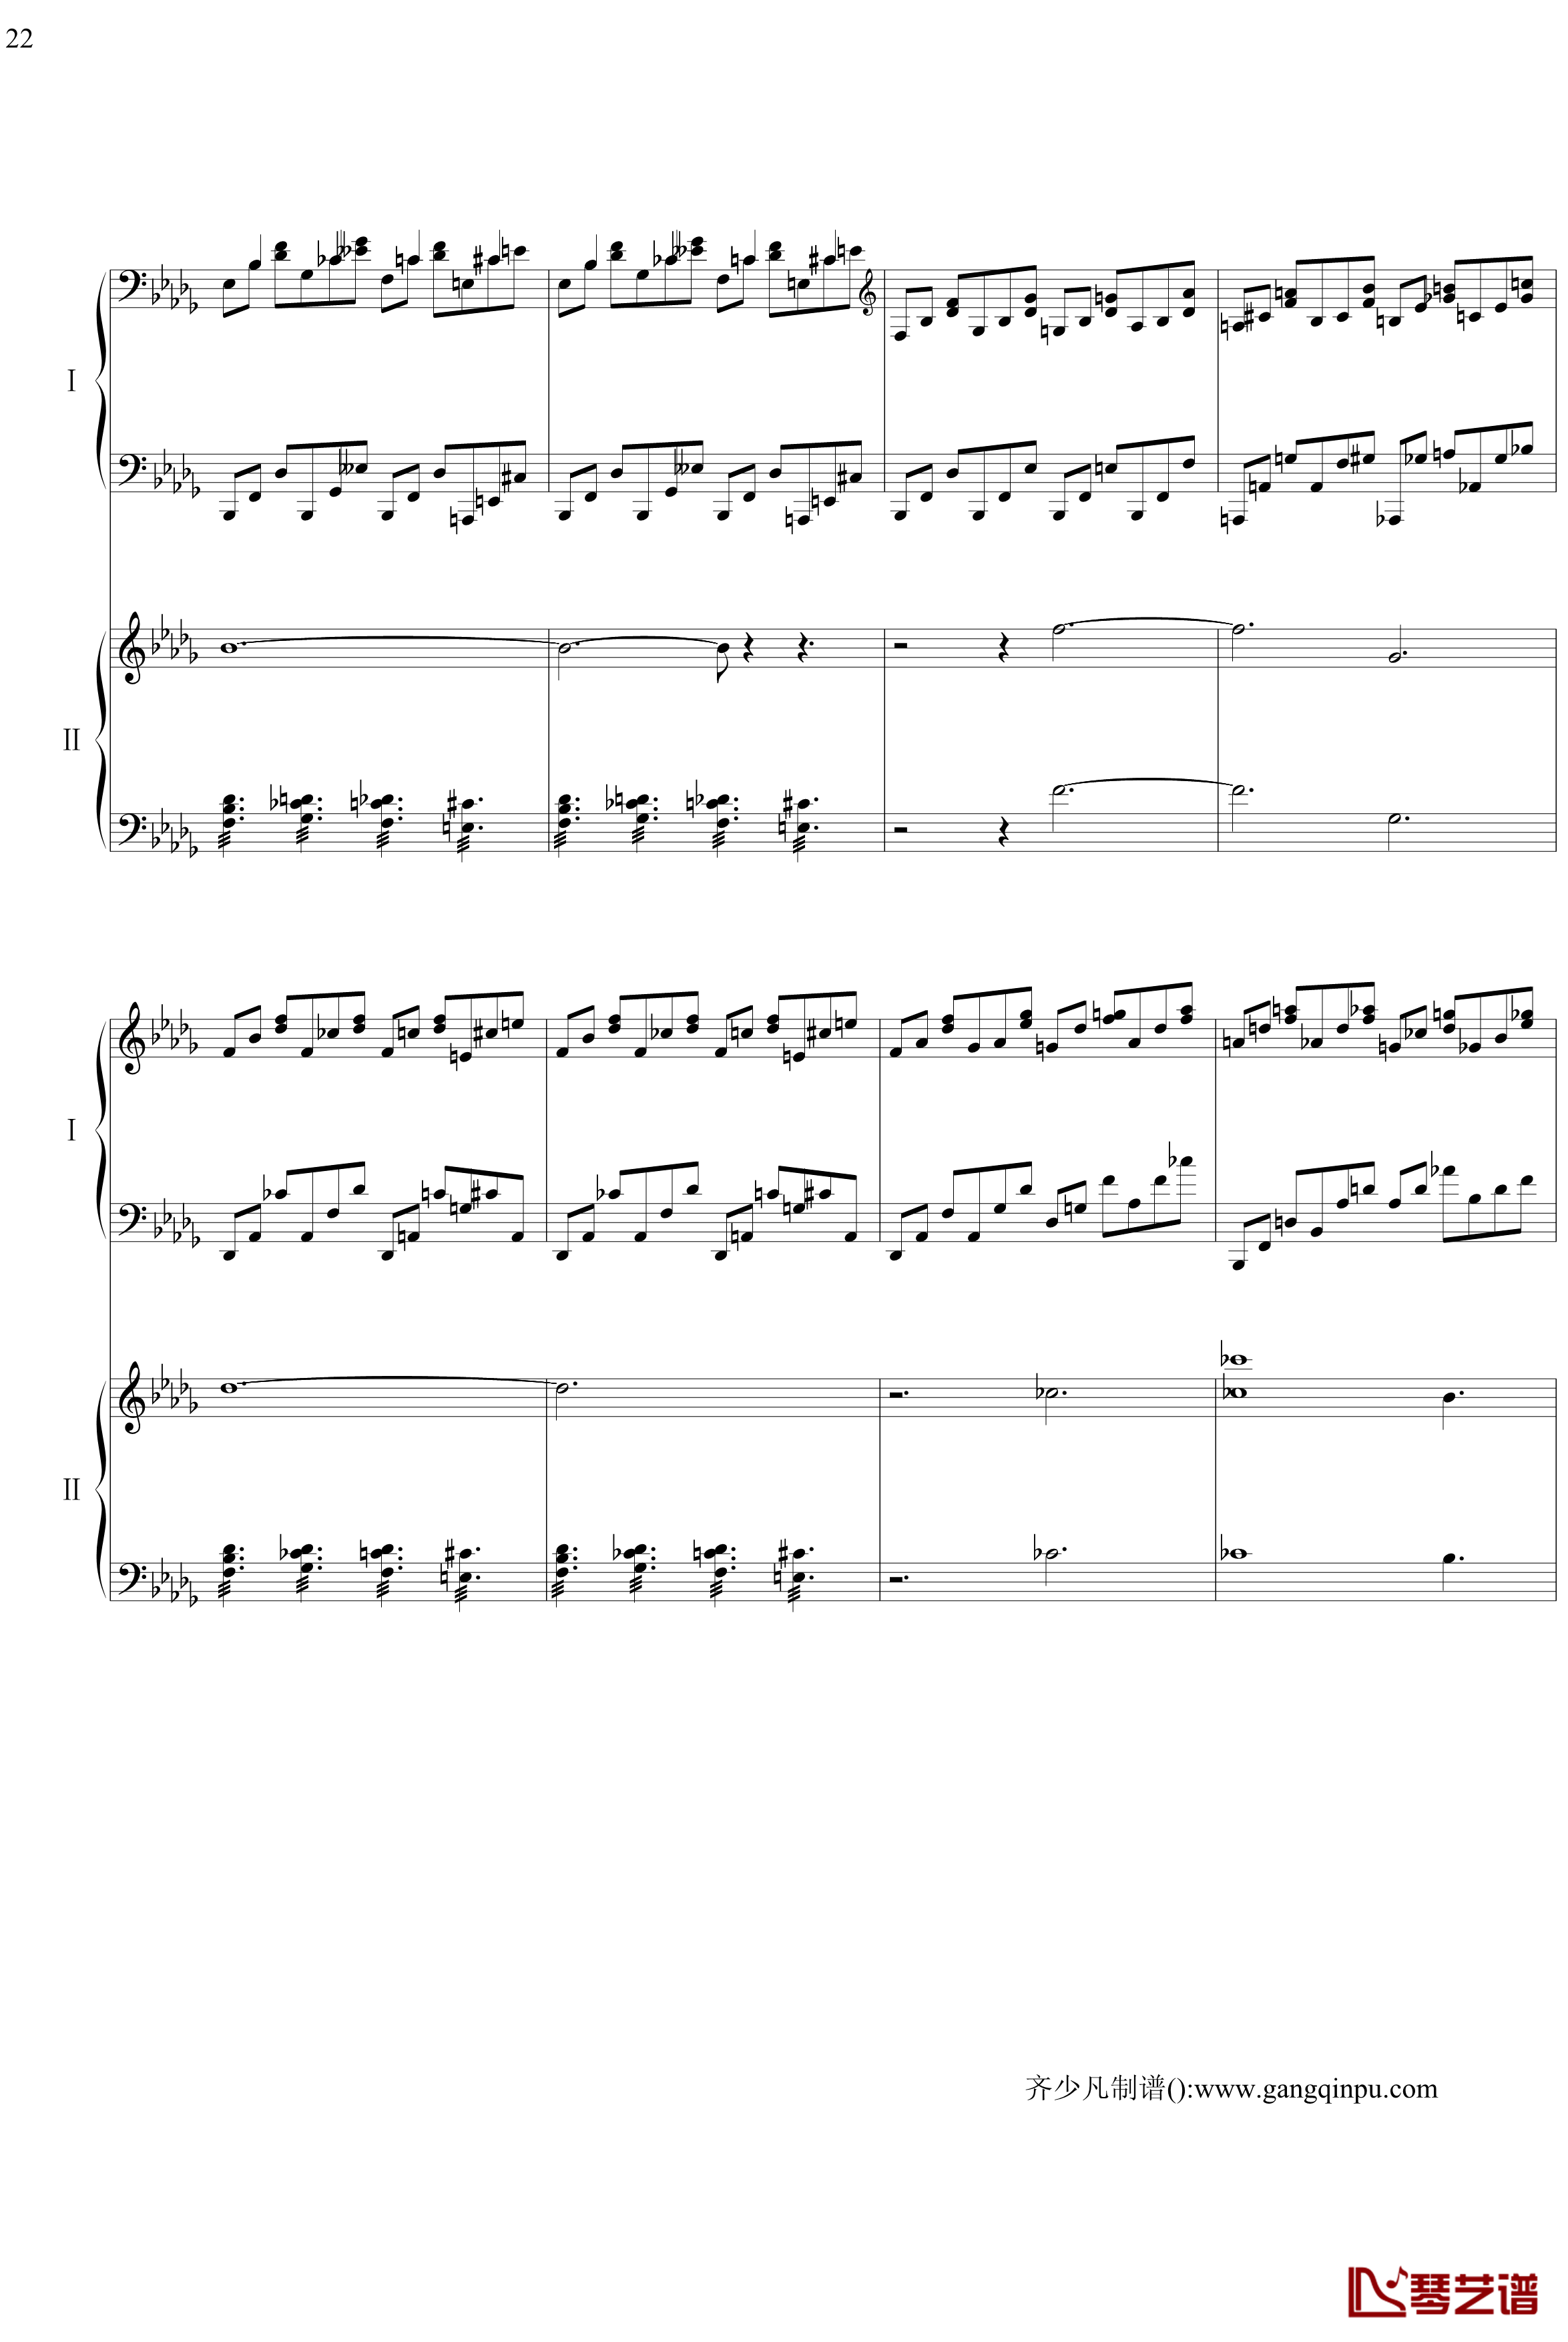 帕格尼尼主题狂想曲钢琴谱-11~18变奏-拉赫马尼若夫22